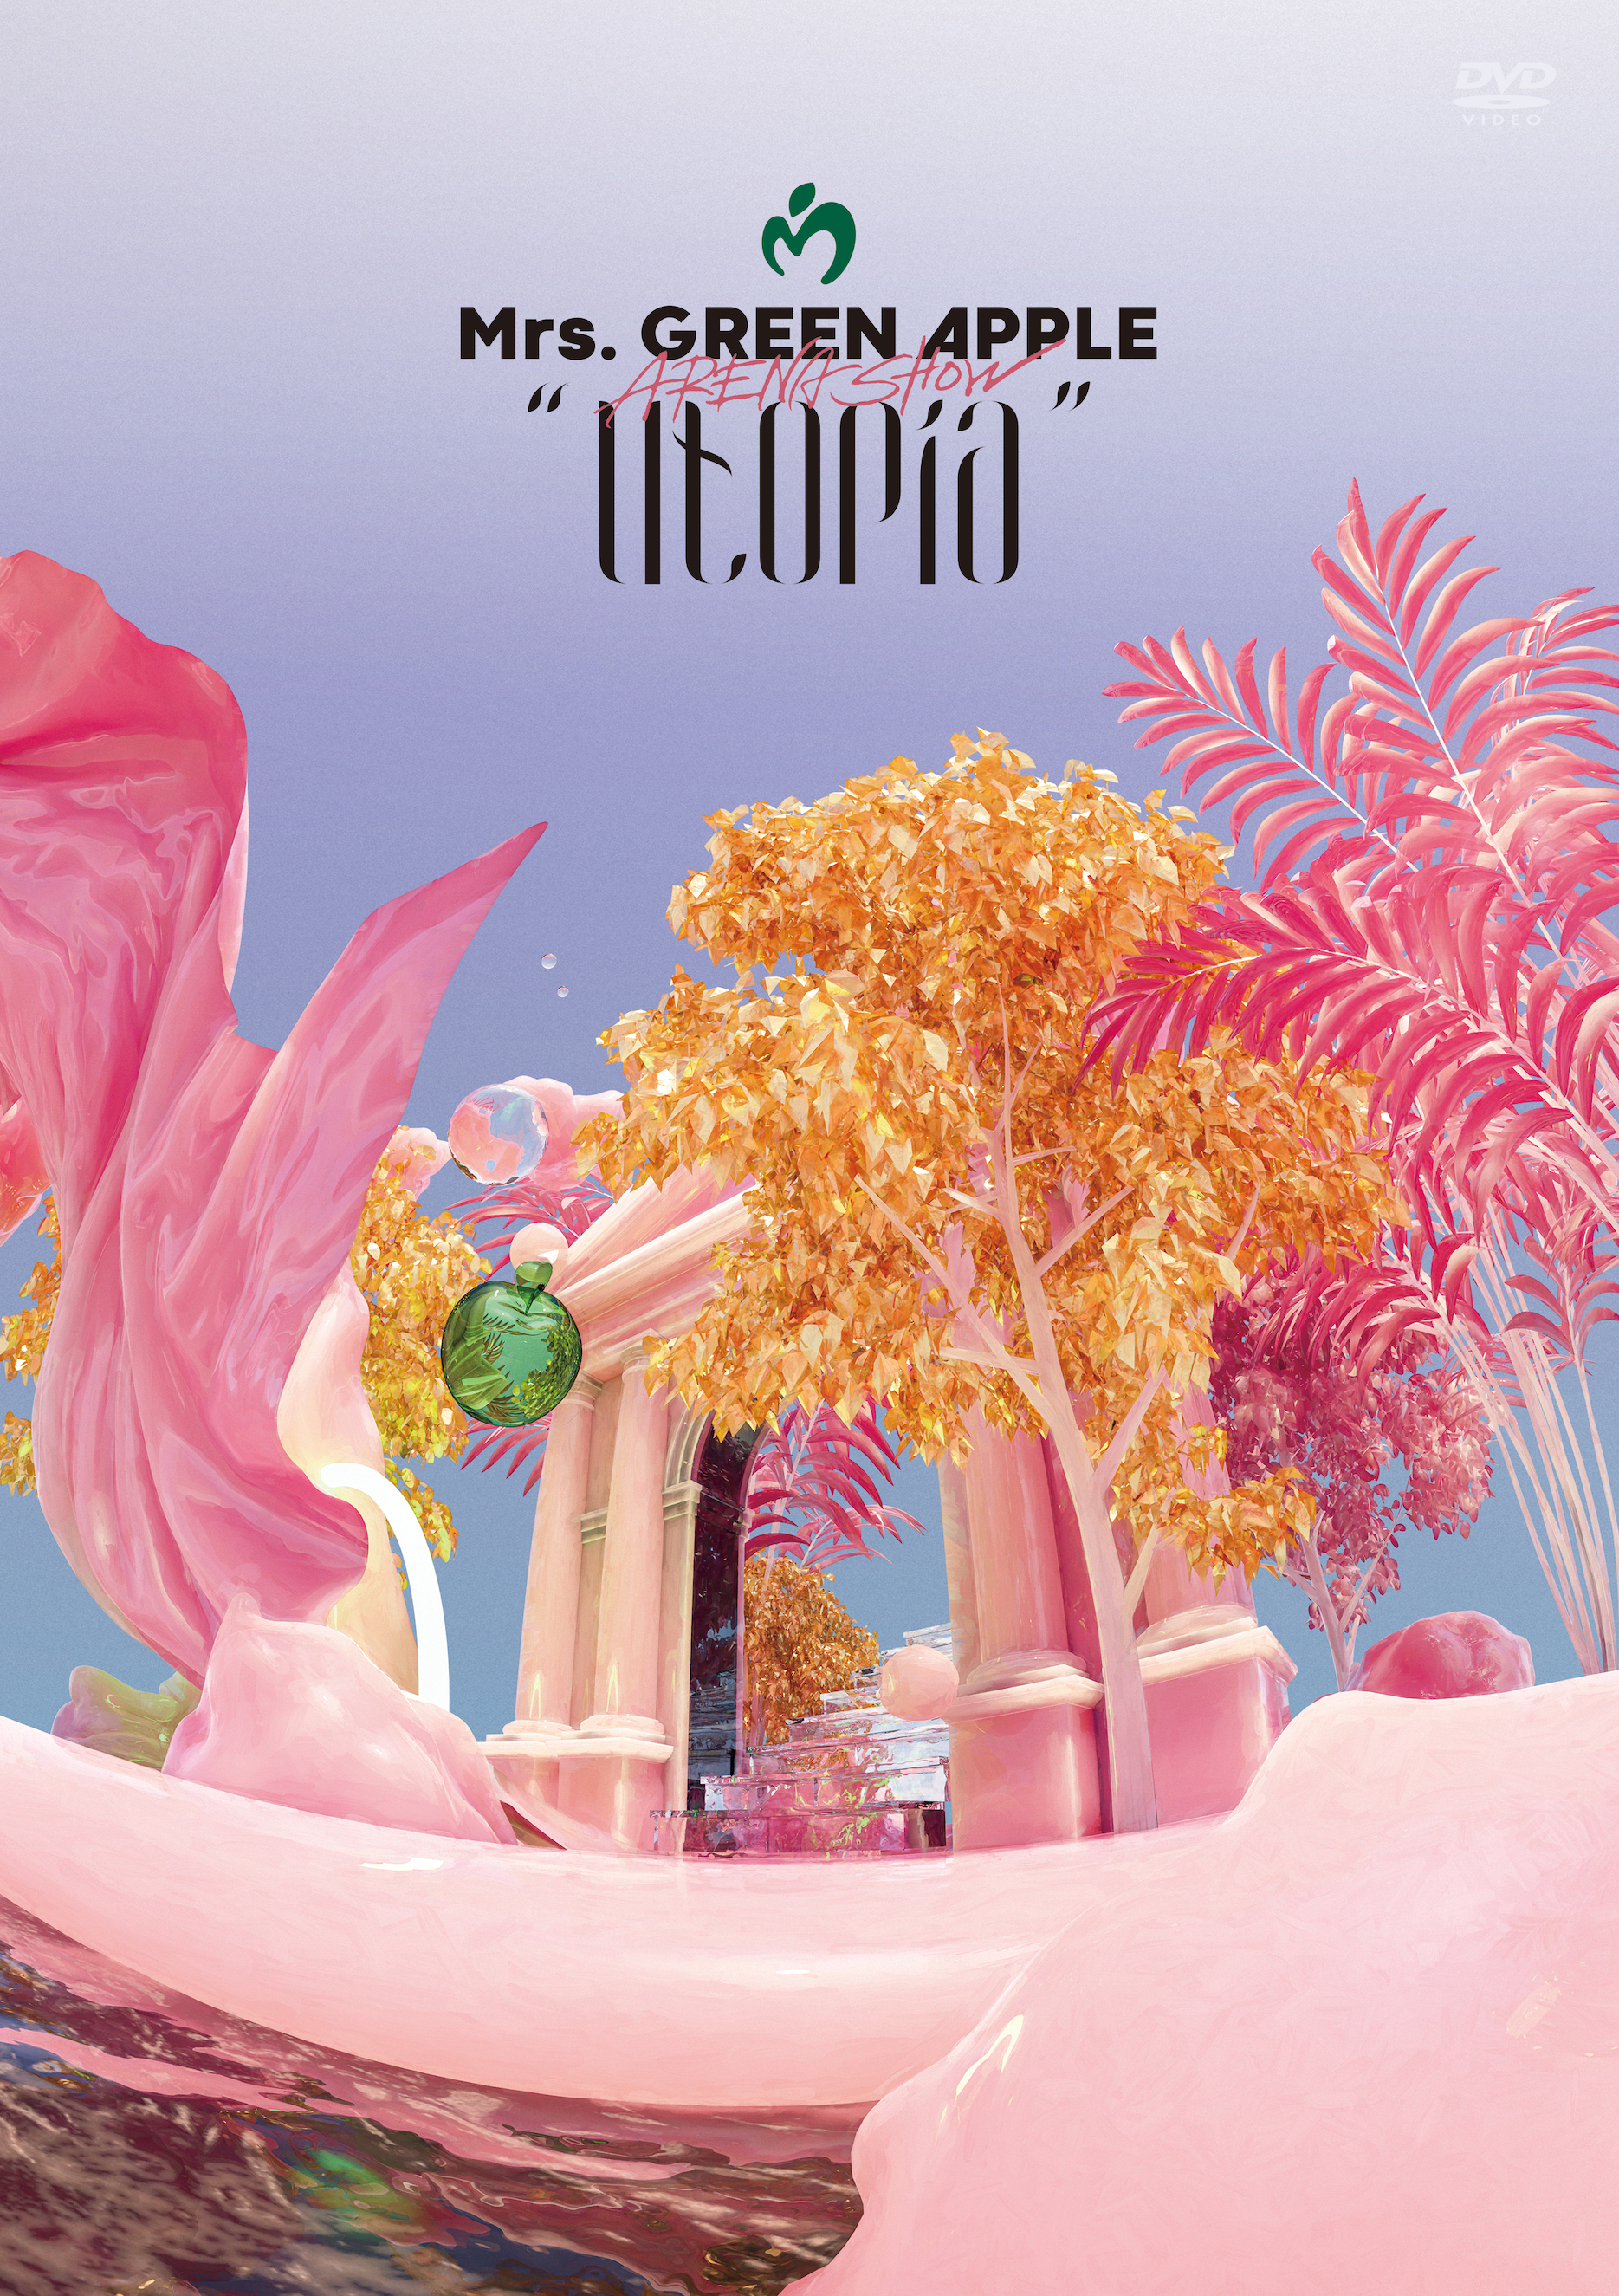 ARENA SHOW “Utopia”（初回限定盤）